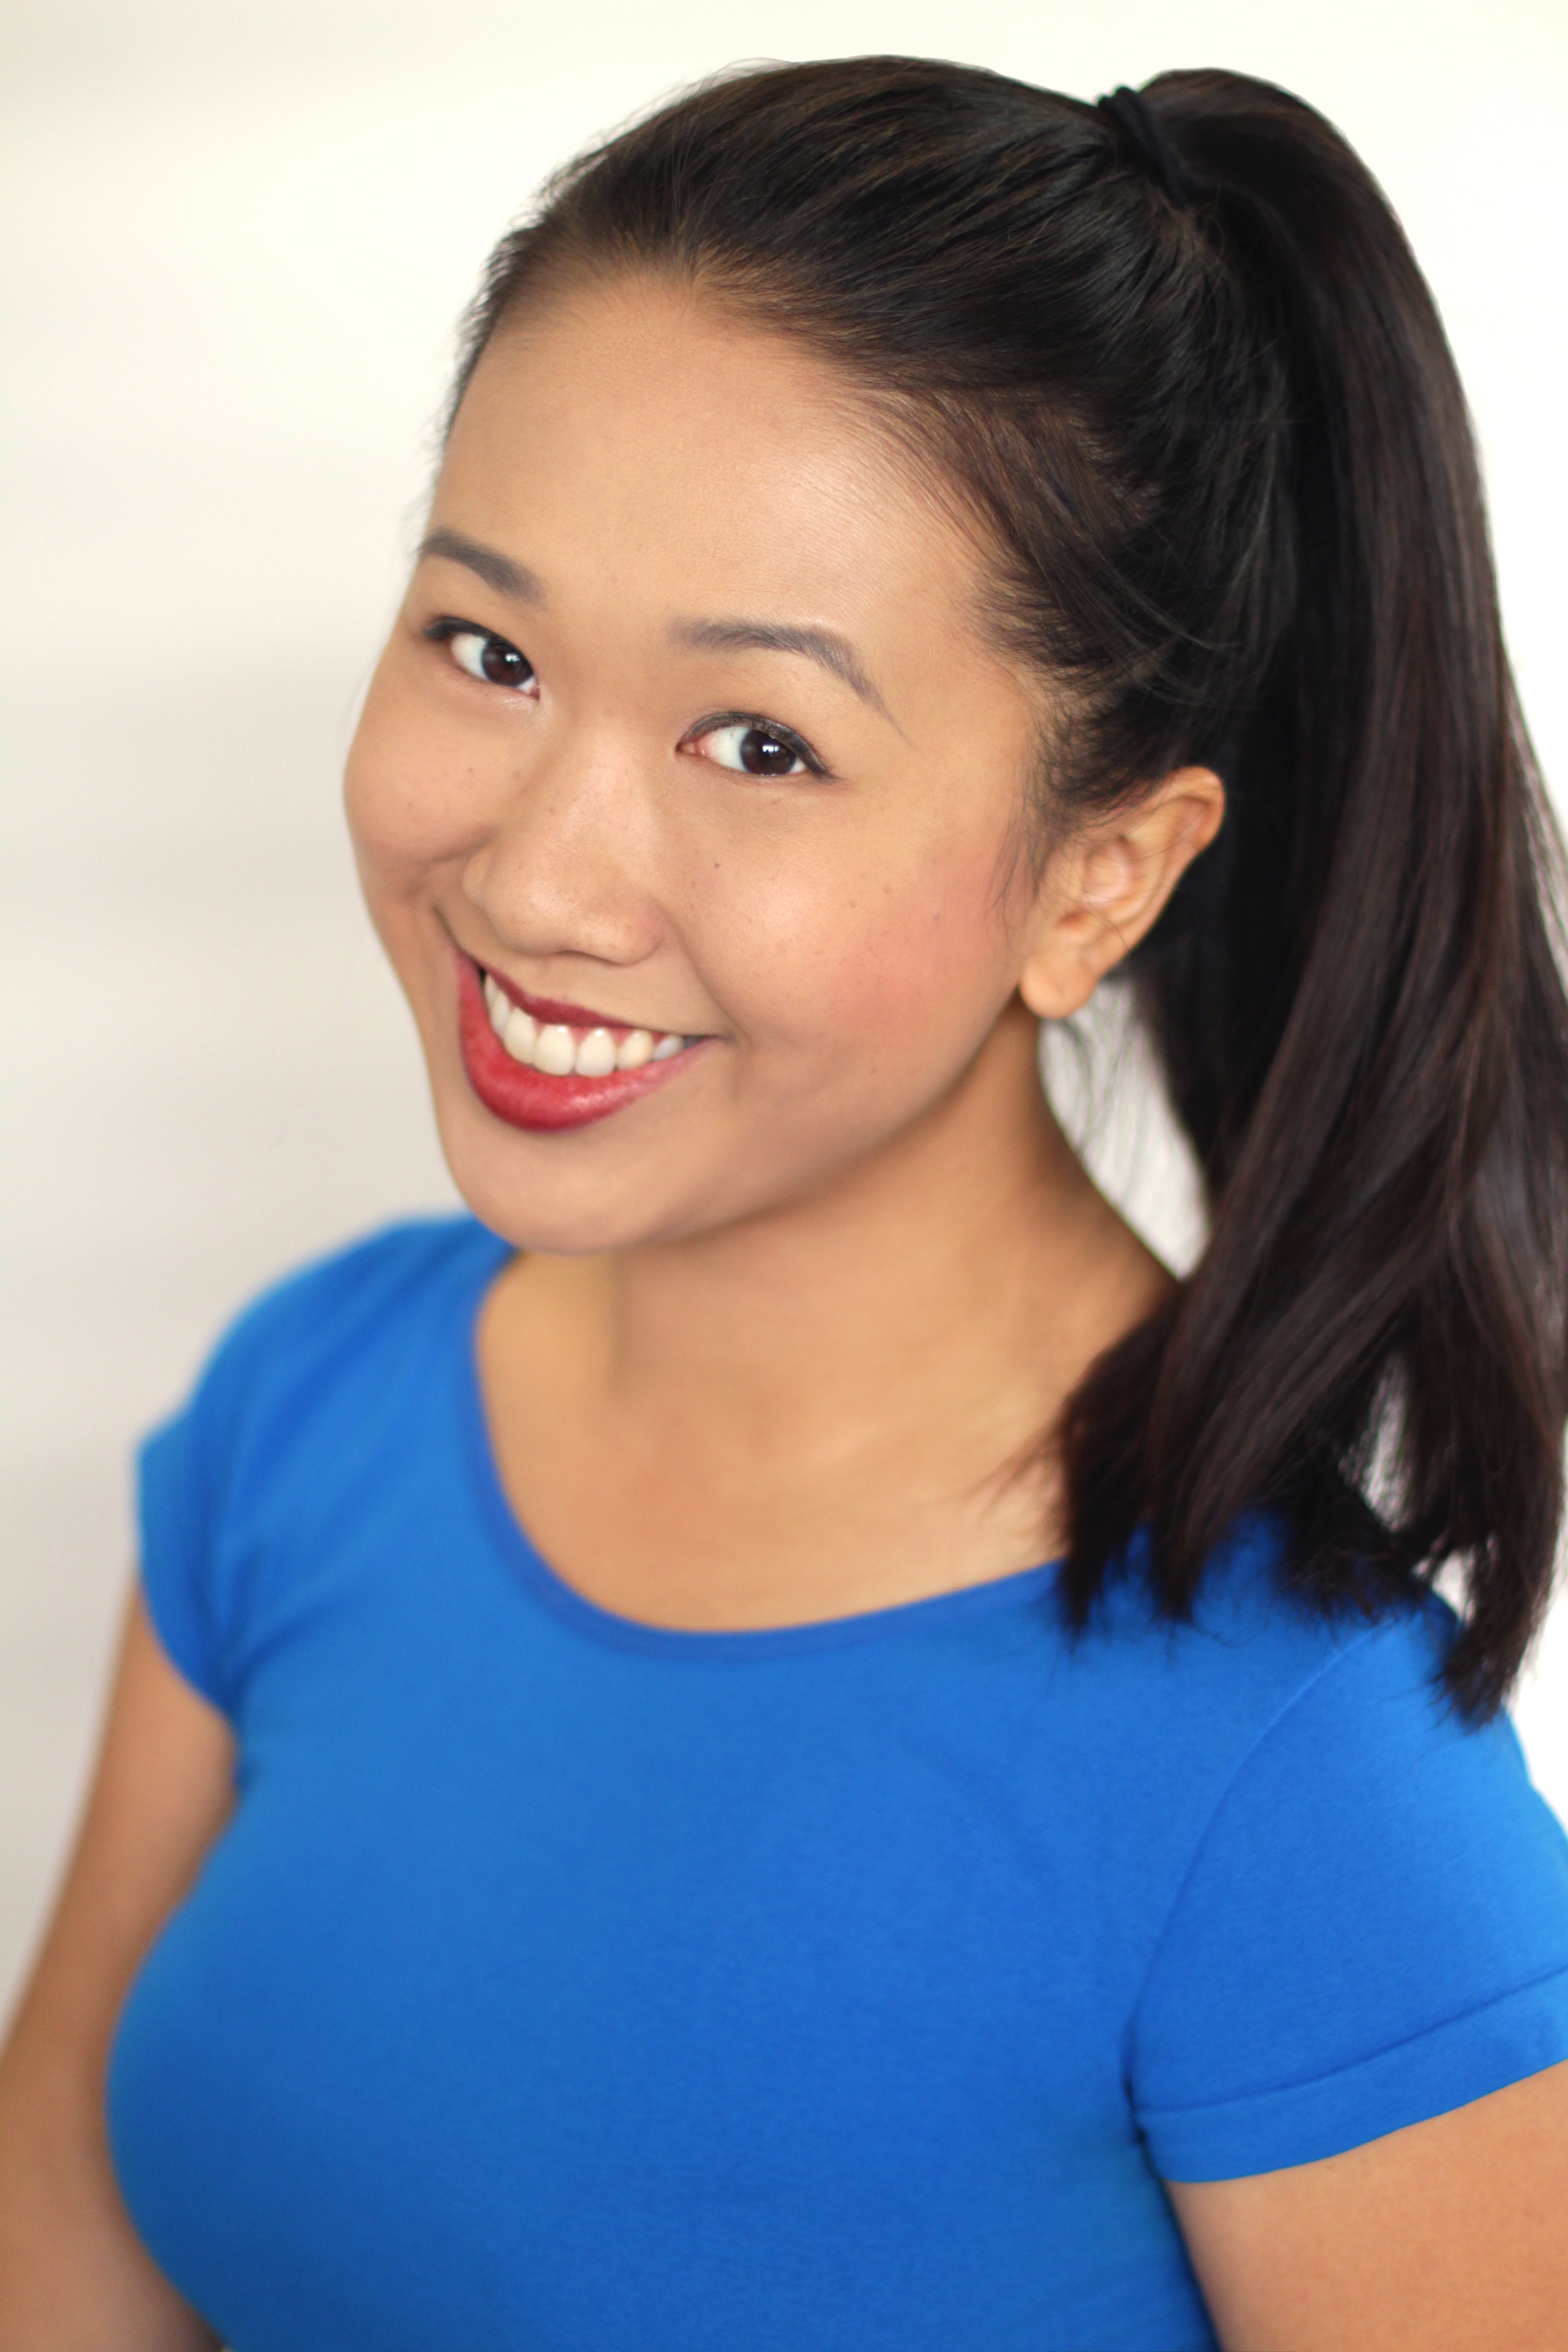 Cindy Nguyen